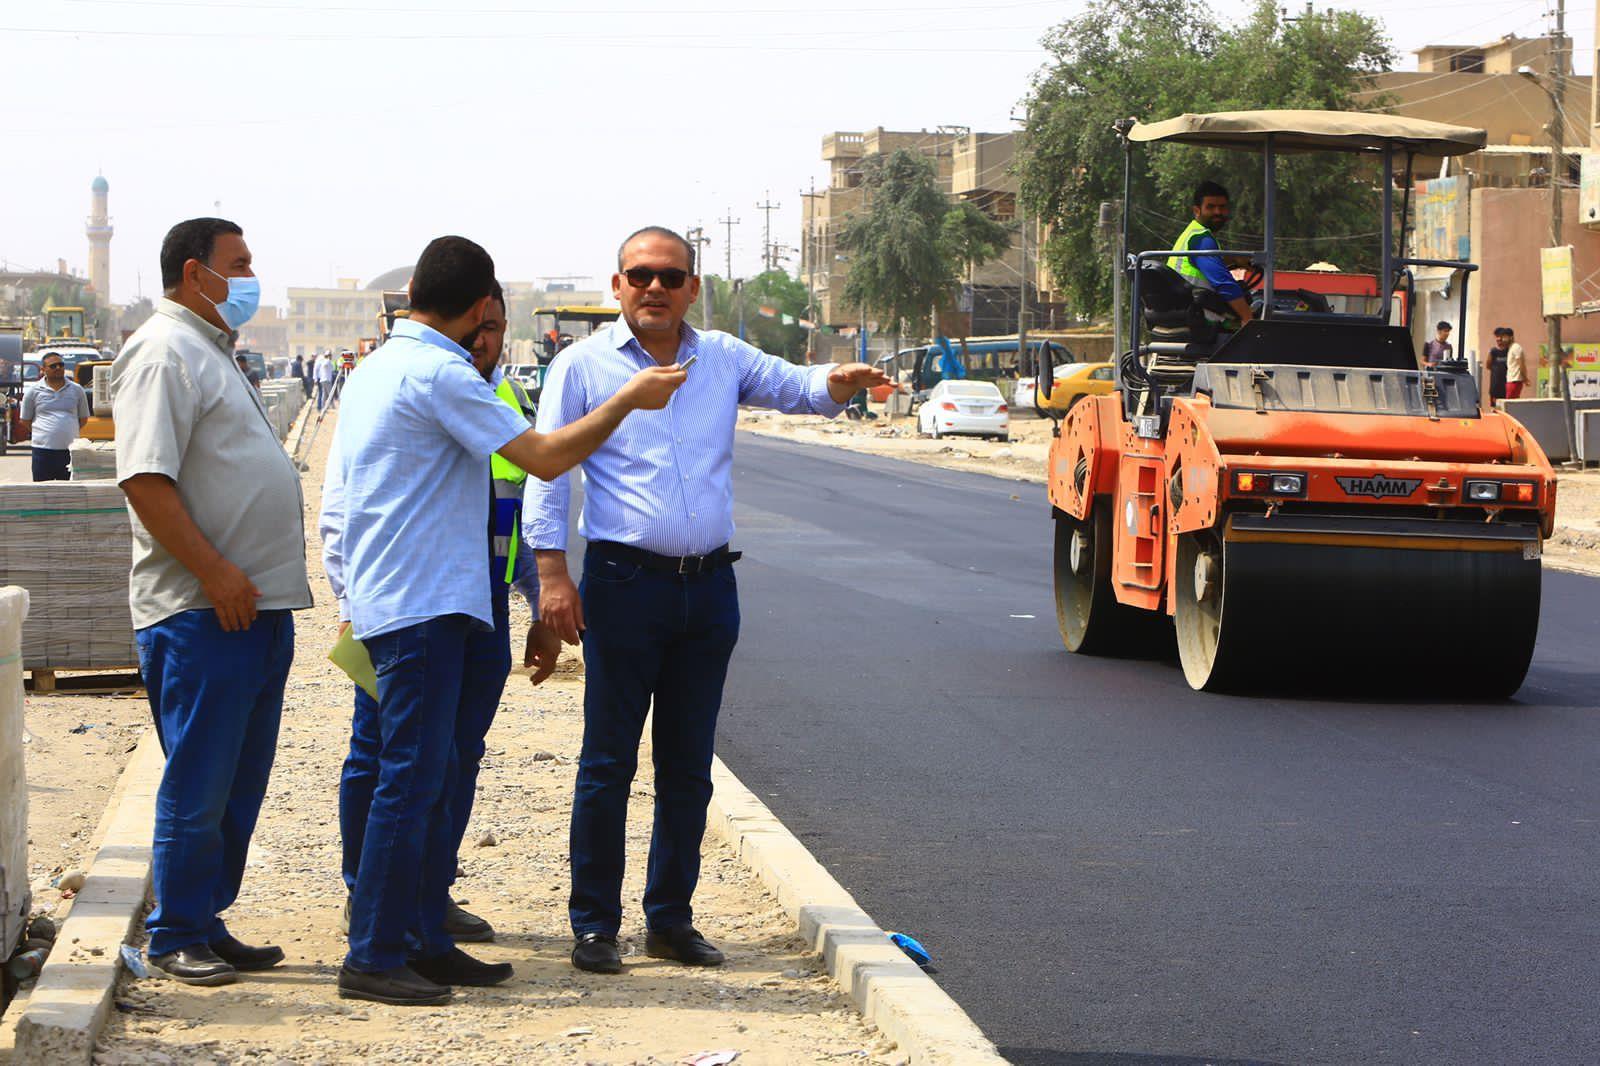 خلال متابعته اعمال تطوير شارع السياب .. المعمار علاء معن يعلن انجاز اكساء ١٠ ملايين م٢ من شوارع بغداد